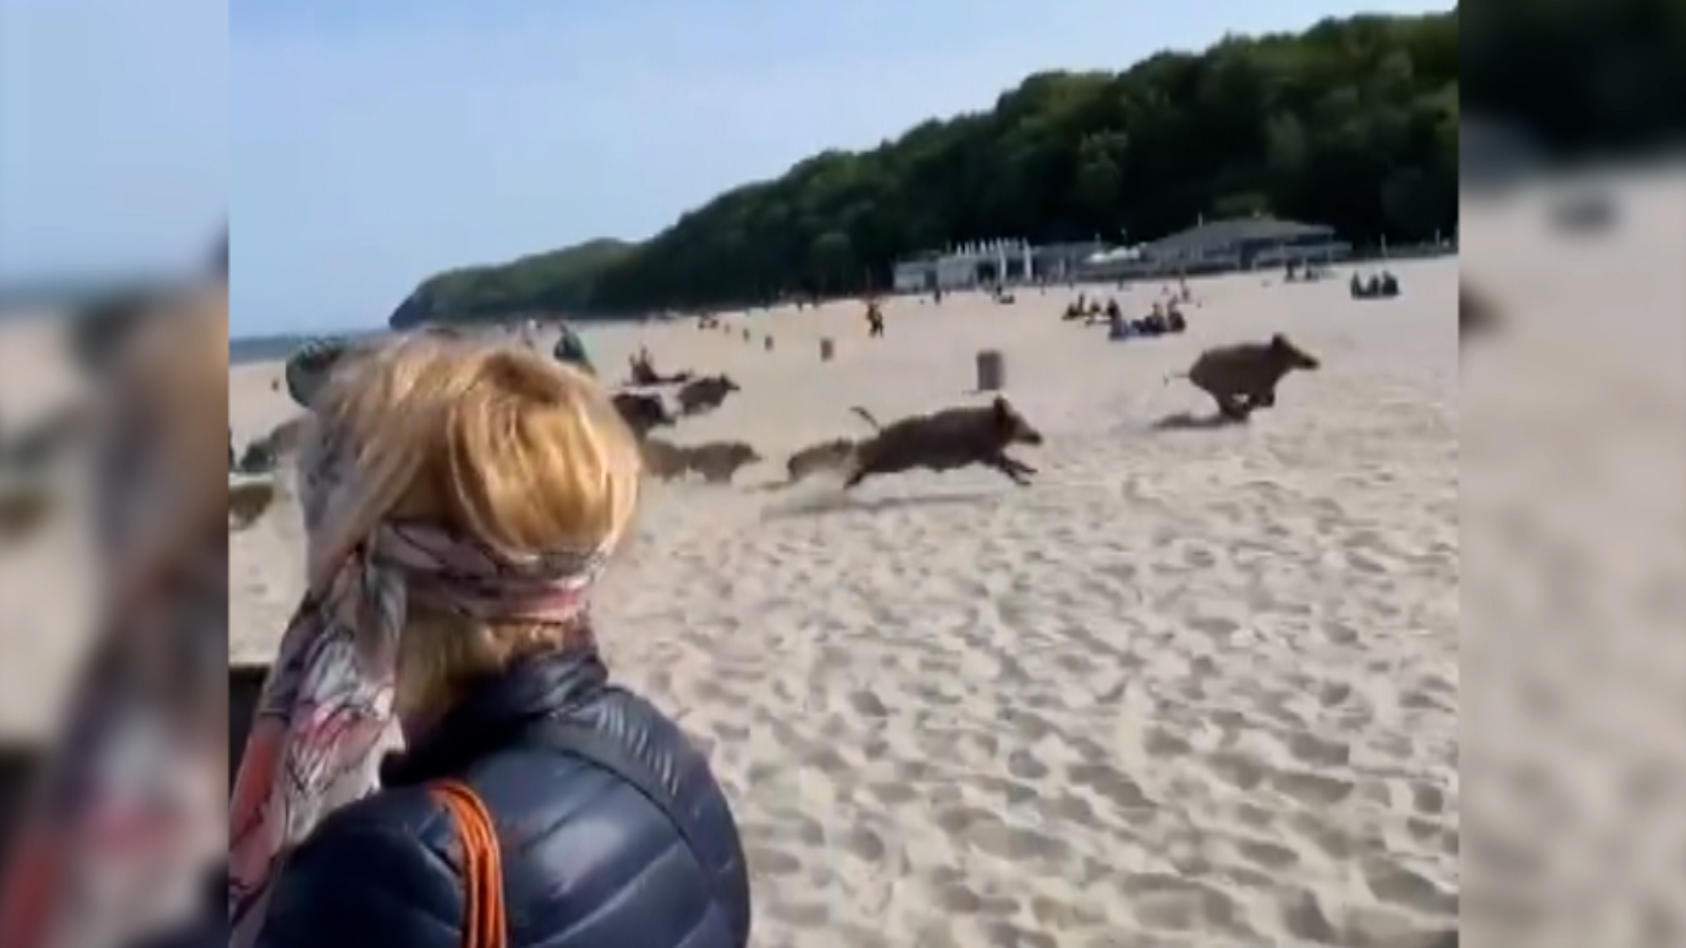 Wildschweine verfolgen Strandbesucher Sie rennen ungehemmt auf Badegäste zu!